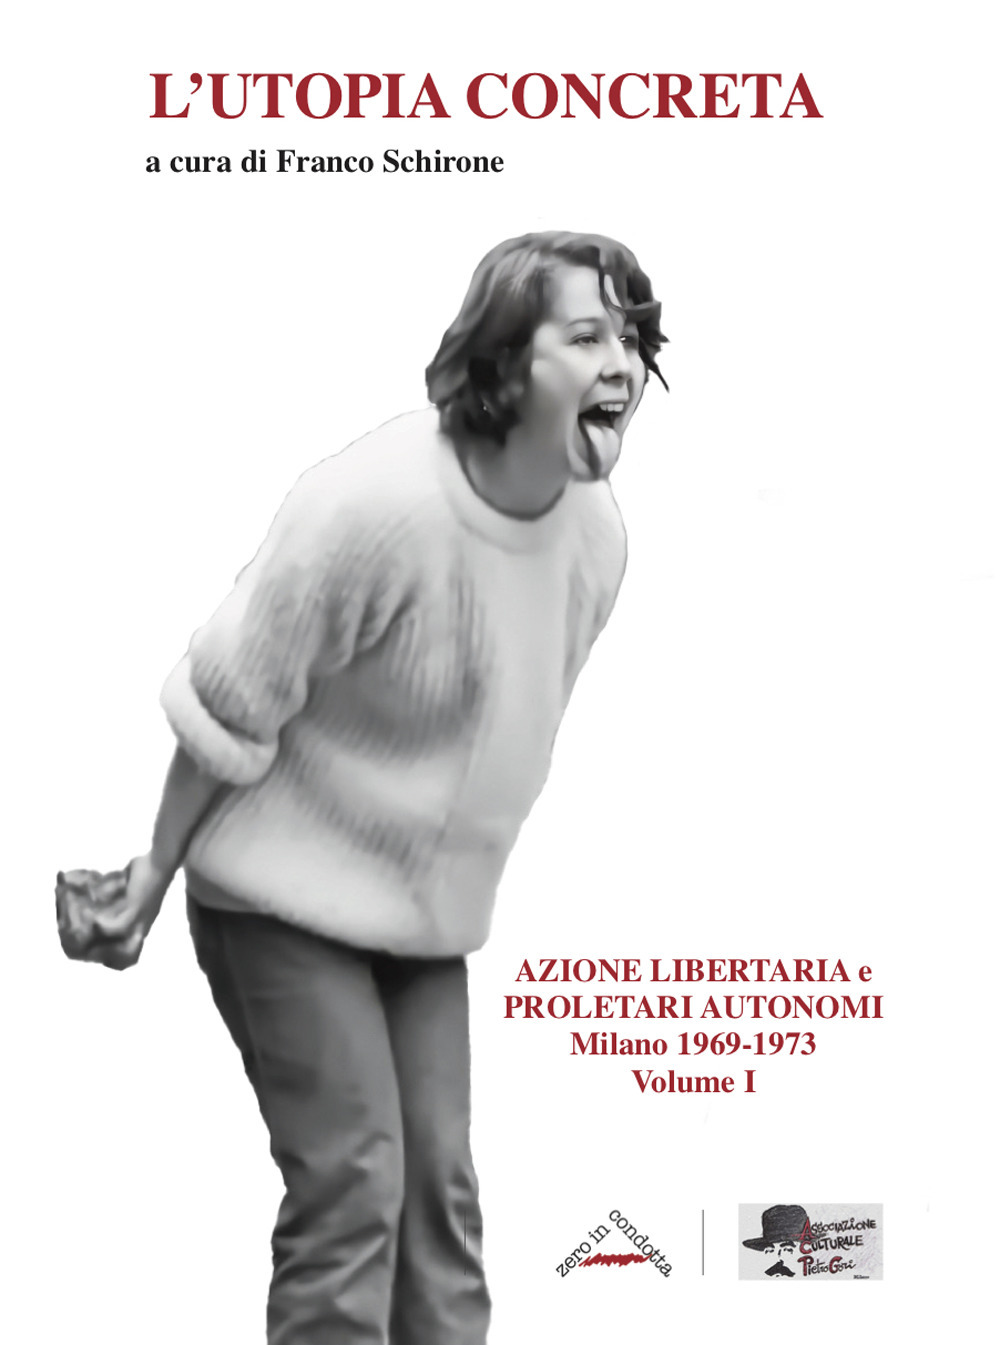 L'utopia concreta. Vol. 1: Azione libertaria e proletari autonomi. Milano 1969-1973